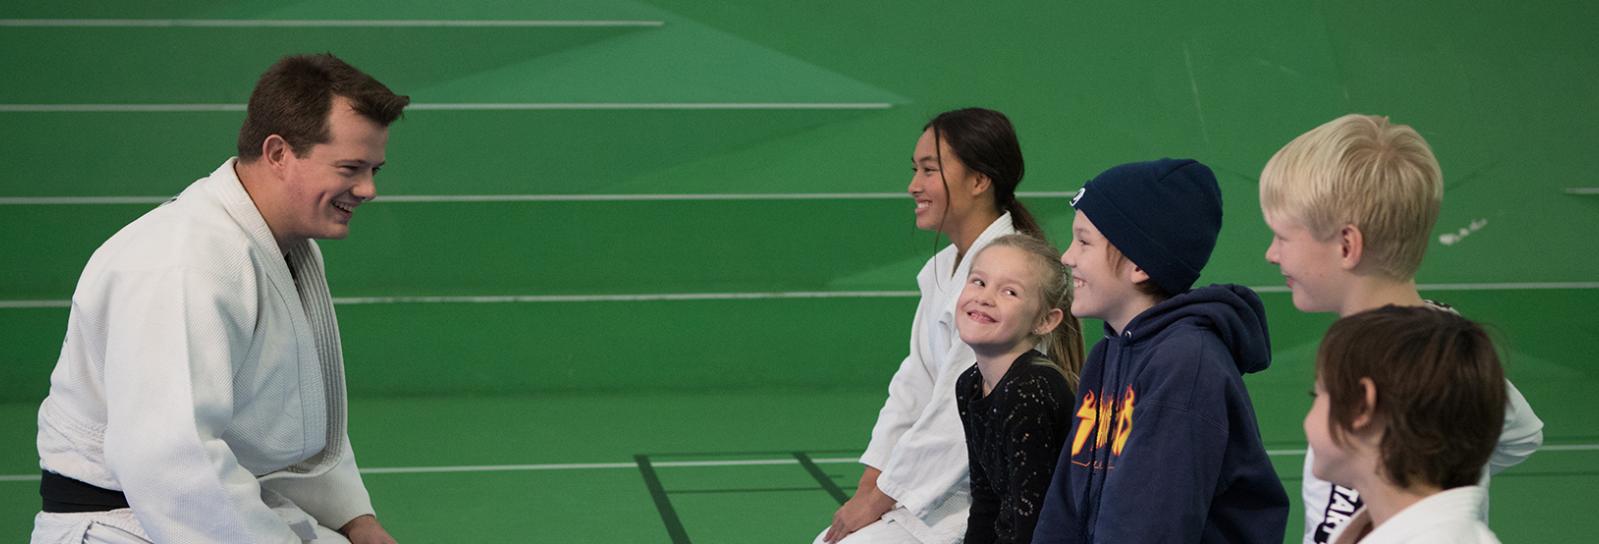 Børn sidder overfor taekwondo træner i træningssal